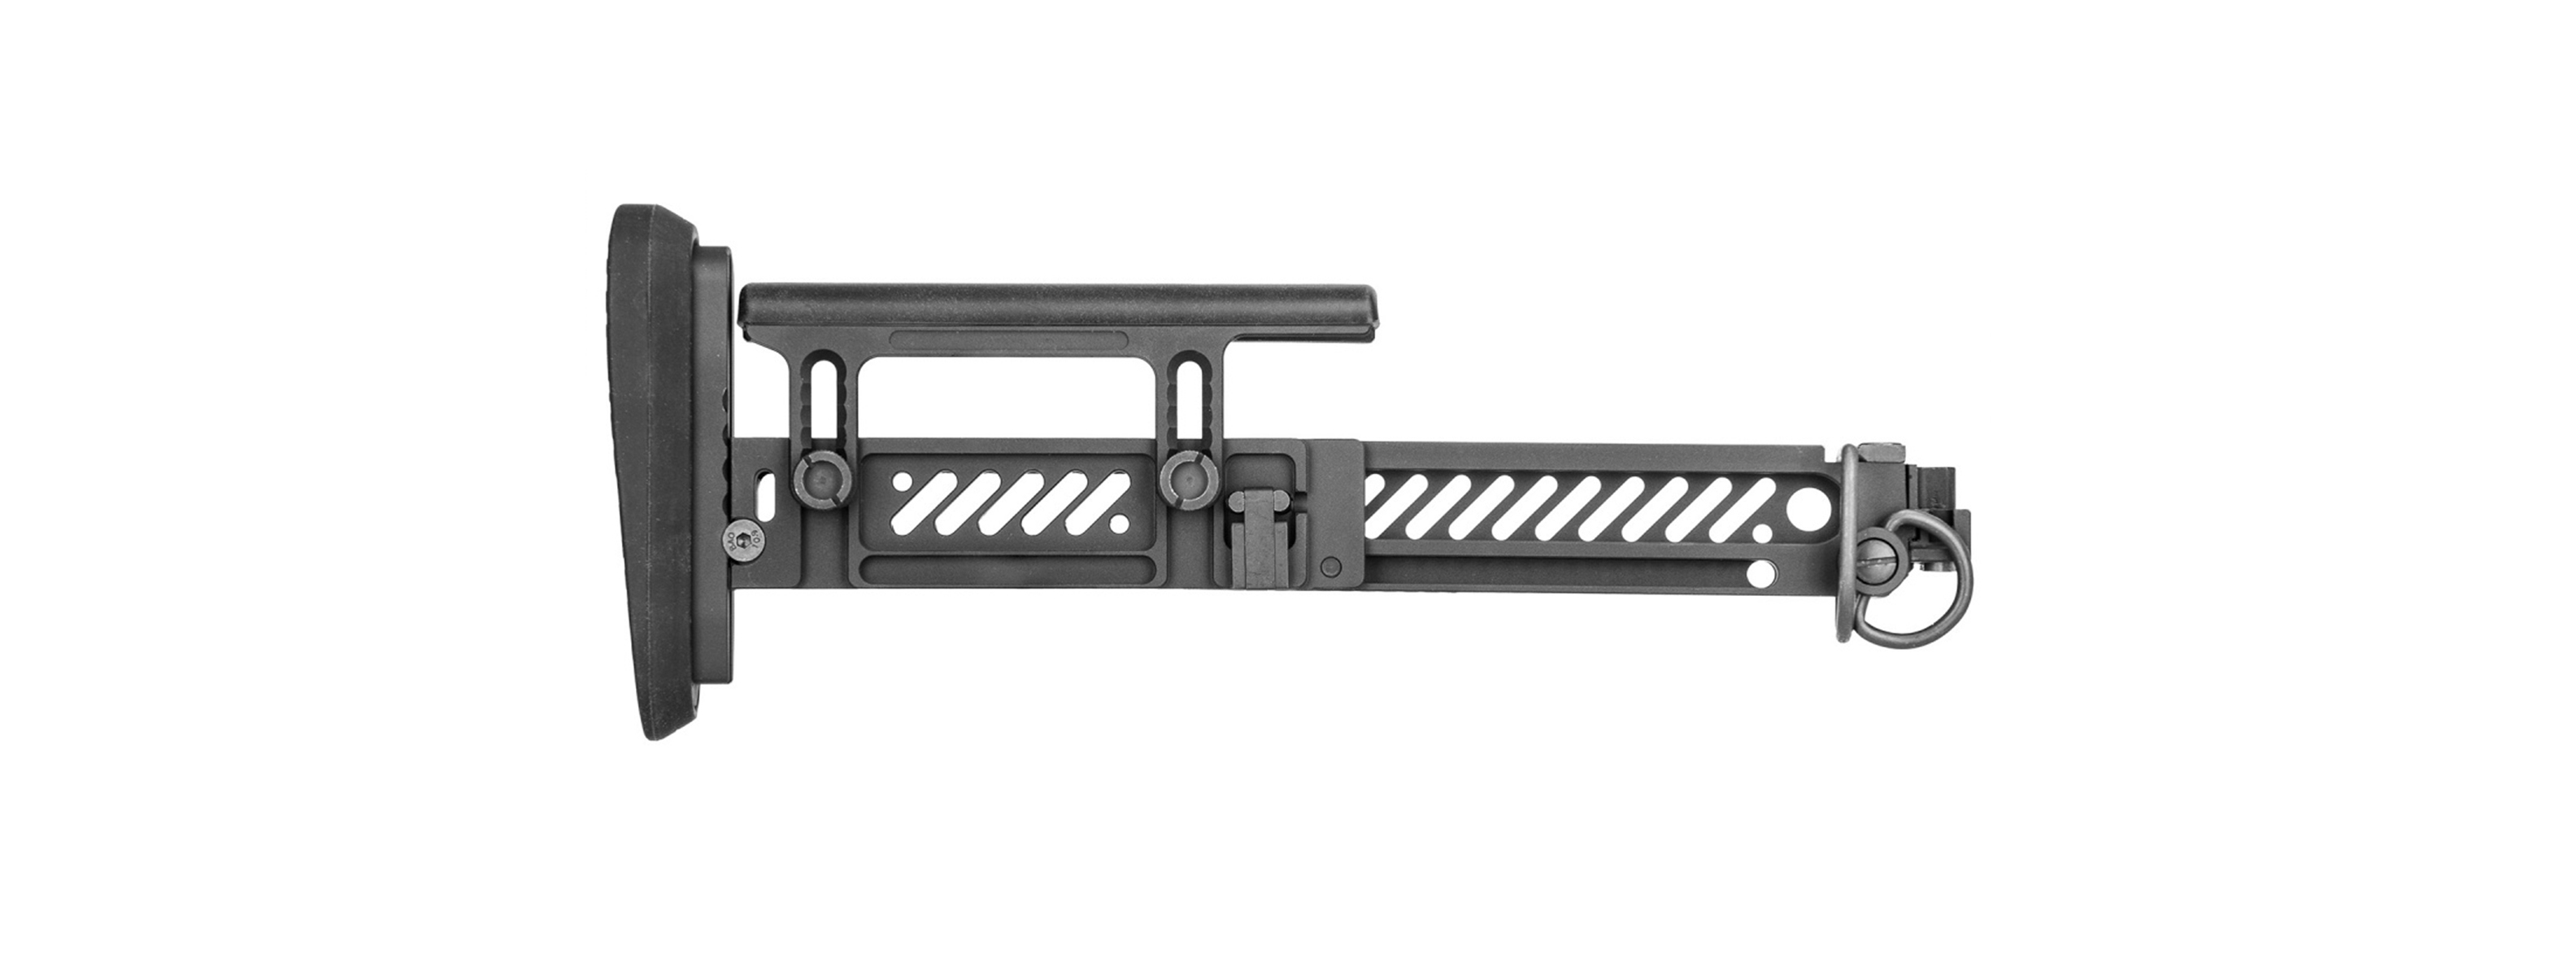 5KU PT-1 AK Side Folding Stock for E&L AK (Gen 2)